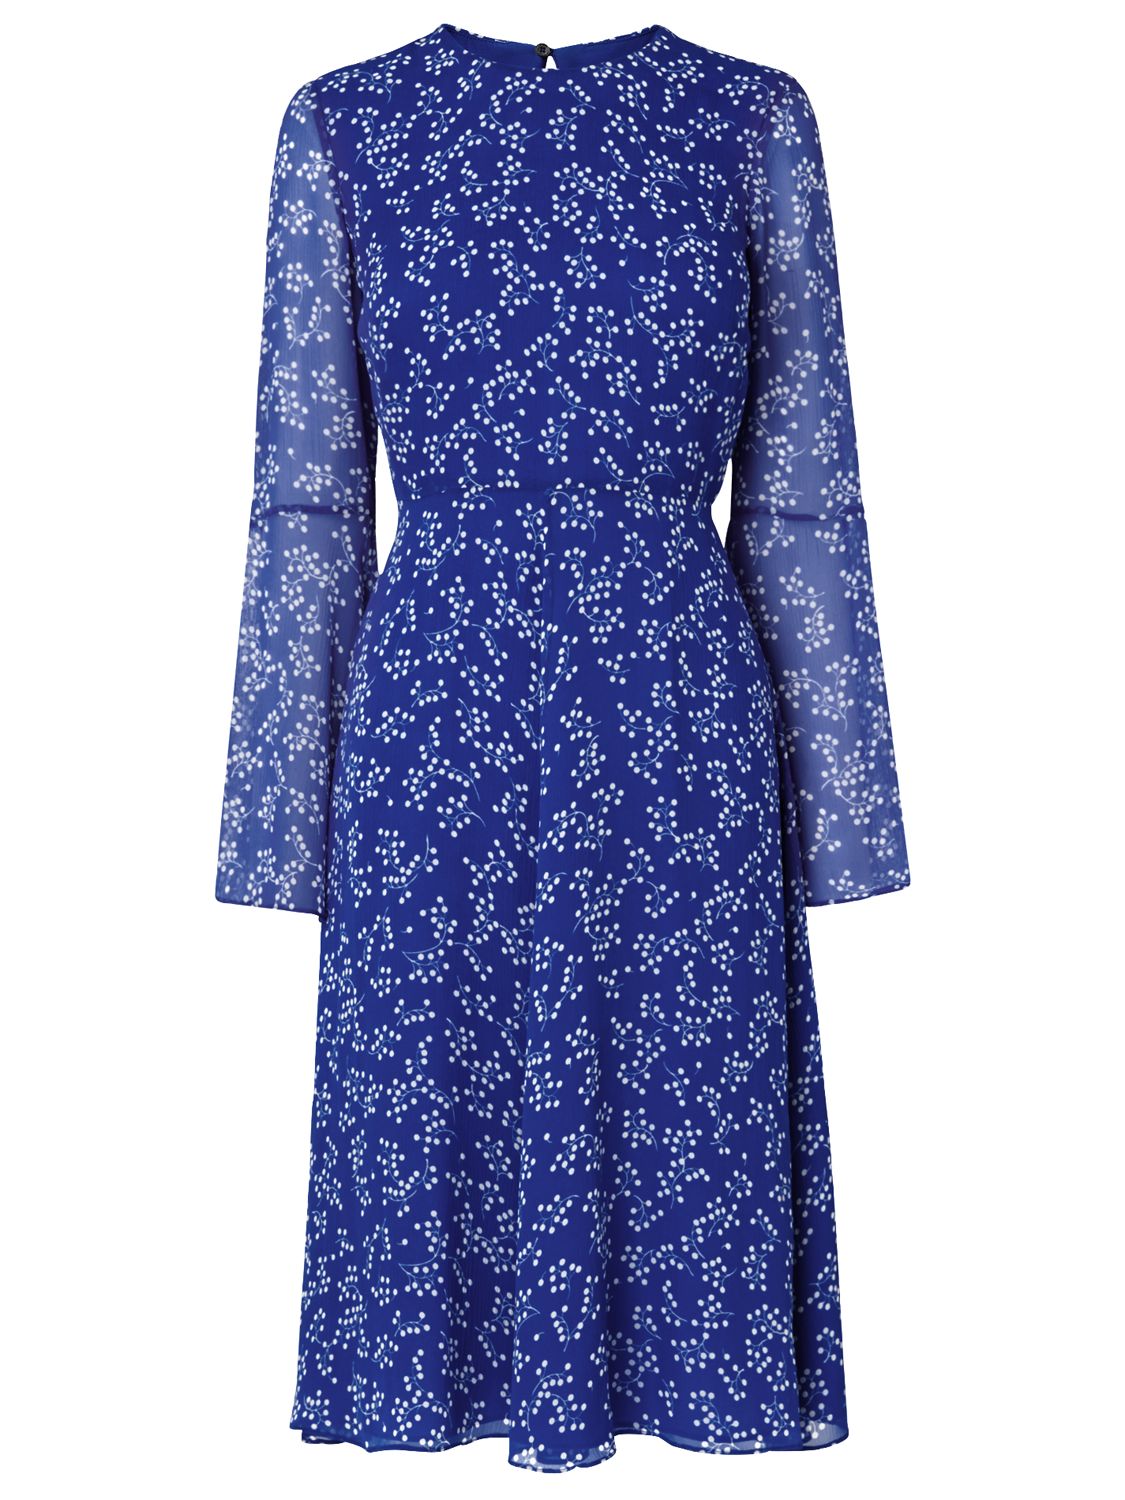 L.K. Bennett Cecily Silk Dress, Blue, 14